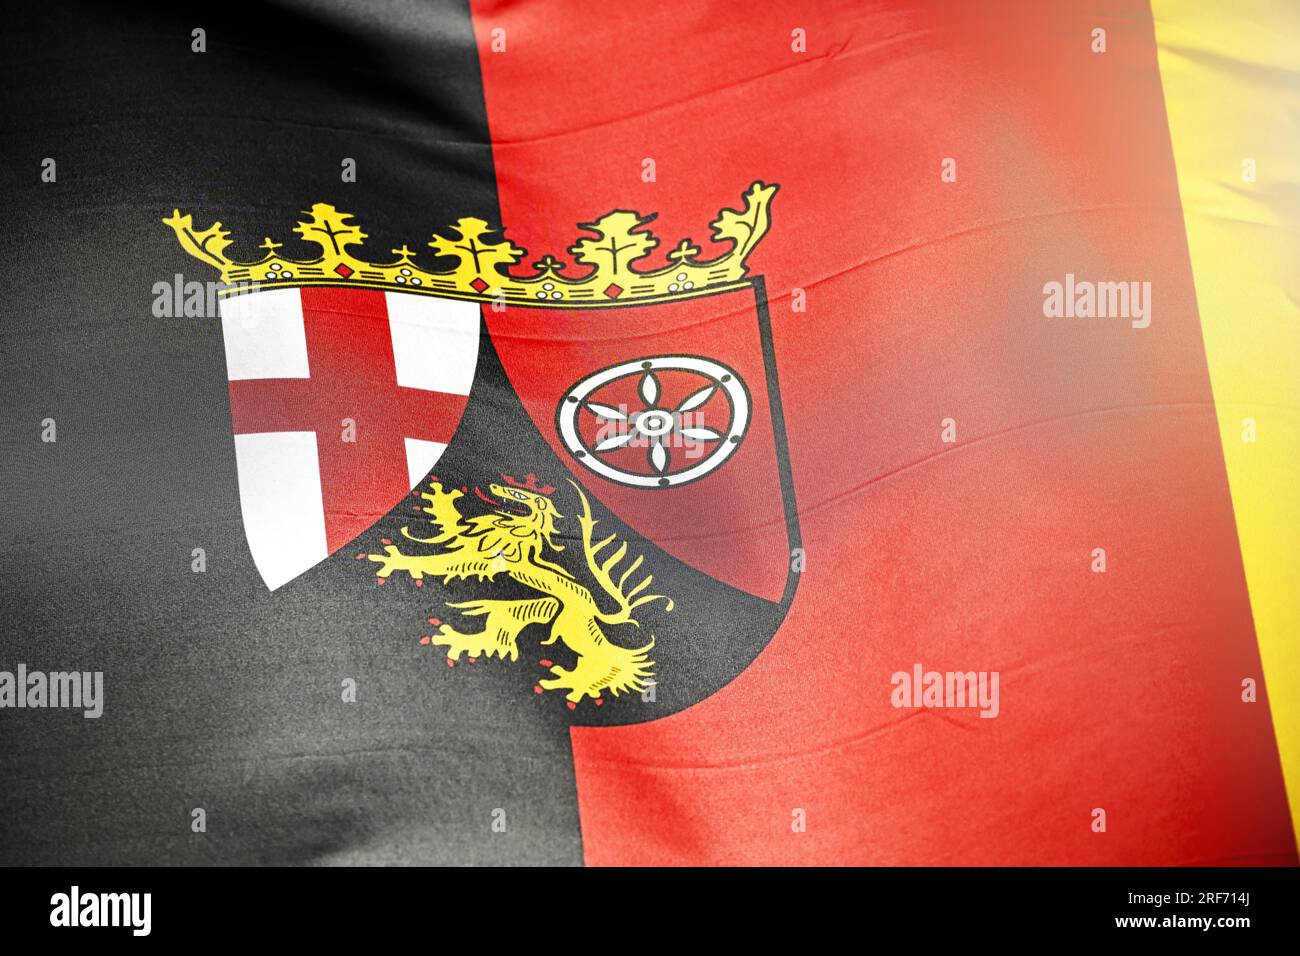 Wehende Fahne des deutschen Bundeslandes Rheinland-Pfalz Foto Stock